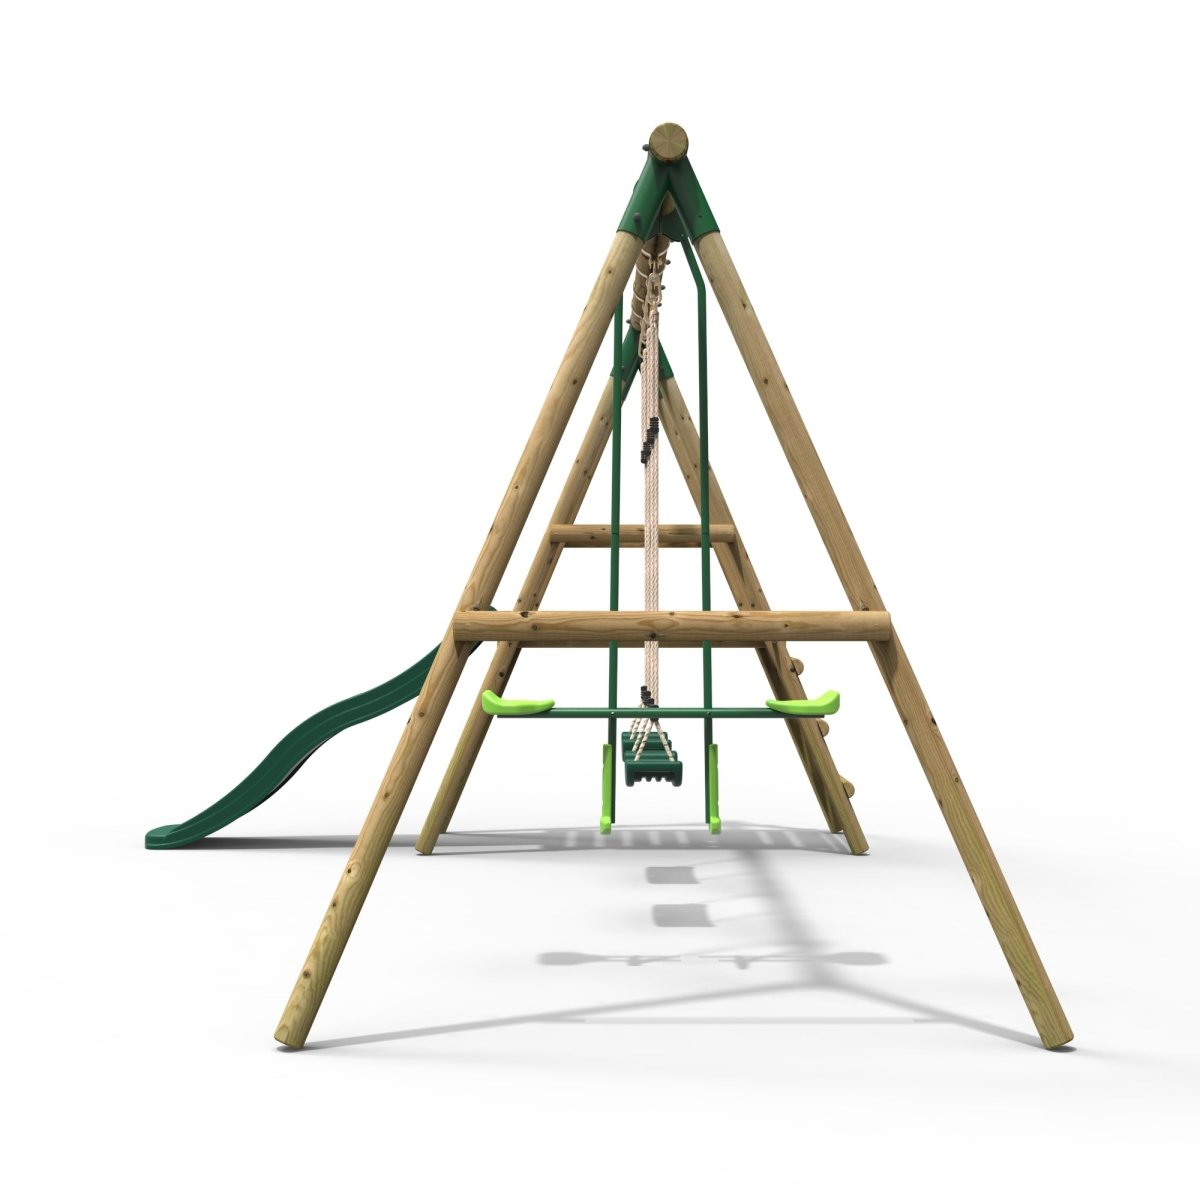 Rebo Explorer Wooden Swing Set with Platform and Slide